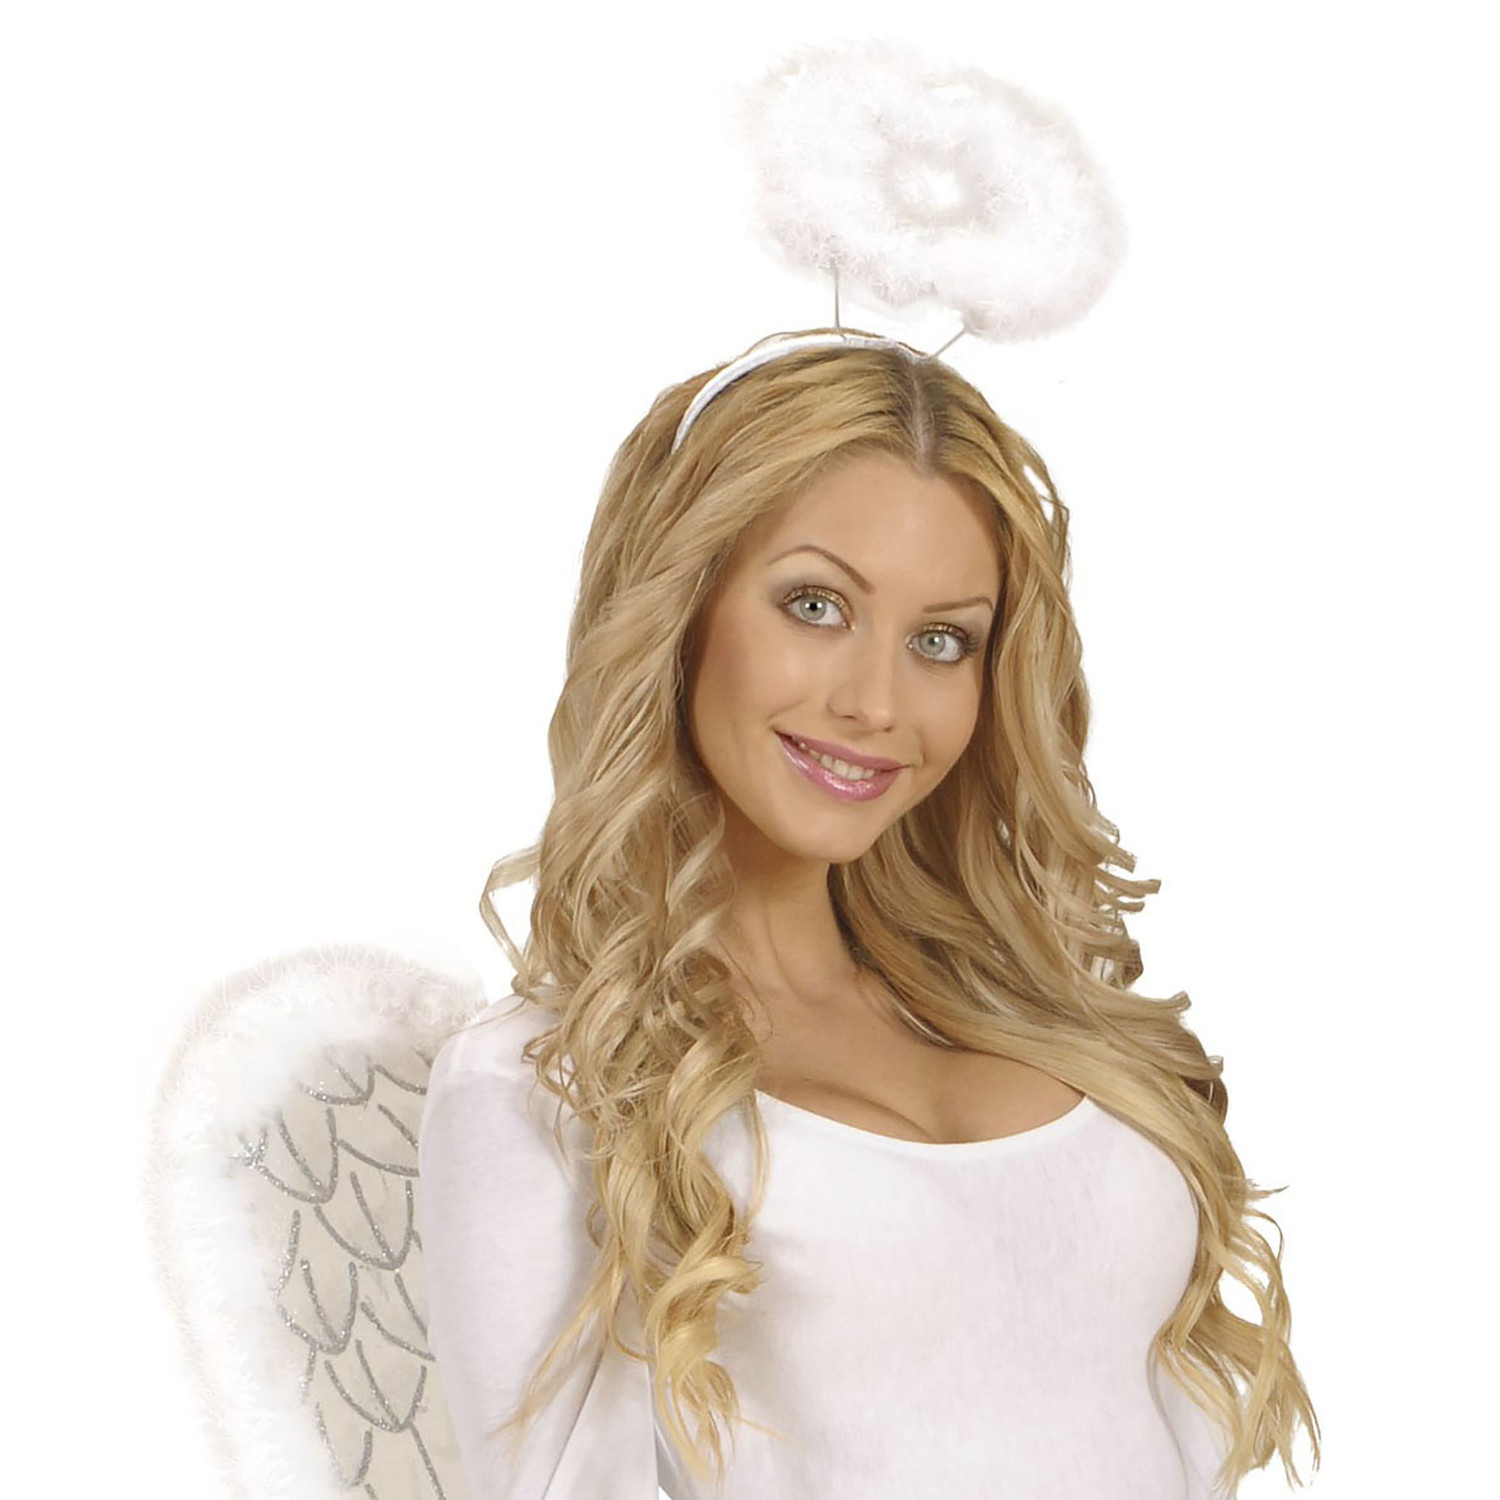 andere leef ermee Omgeving Witte aureool voor engelenpakjes - e-Carnavalskleding